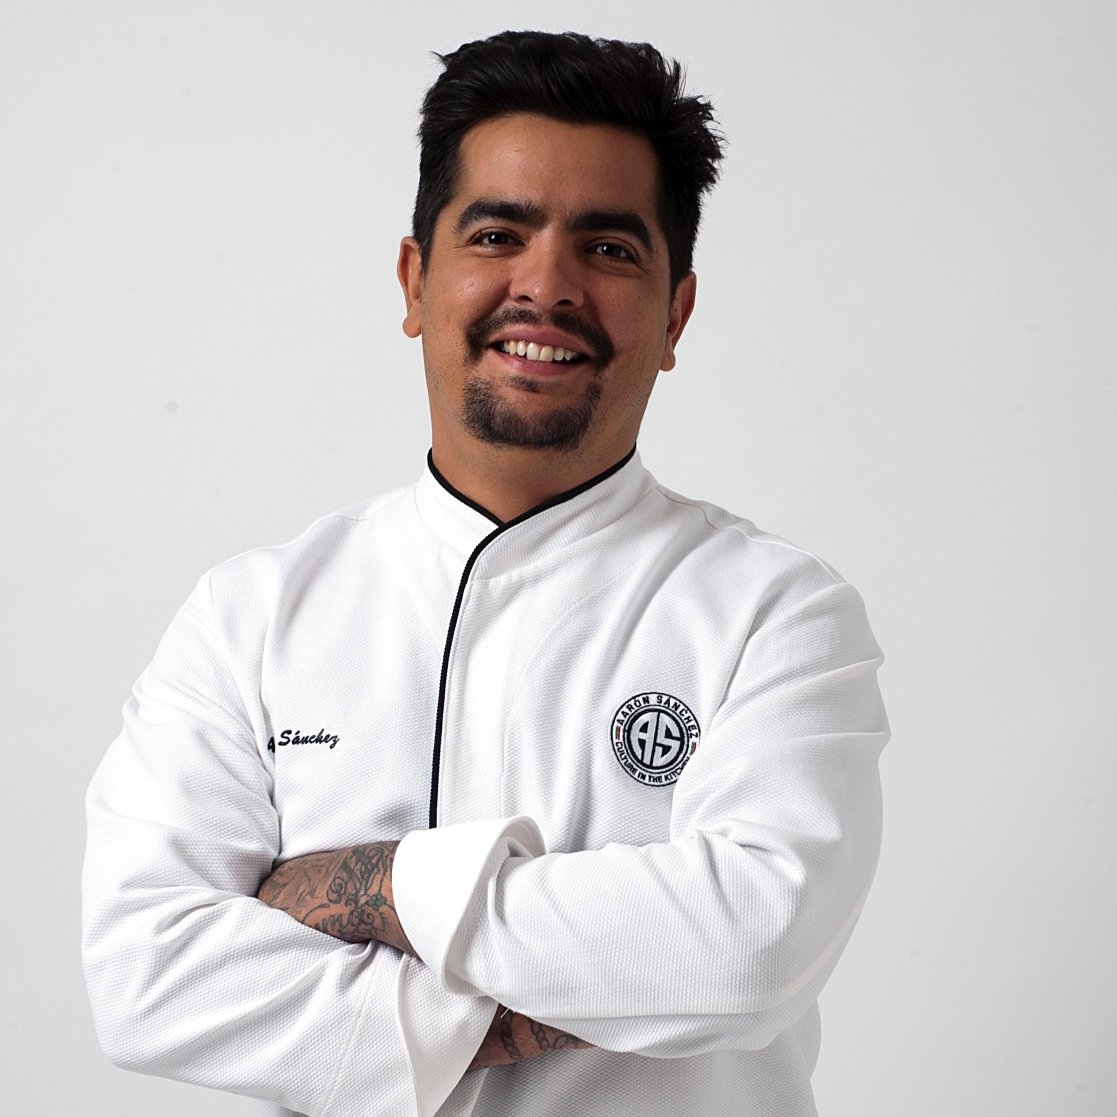 Chef Aaron Sanchez